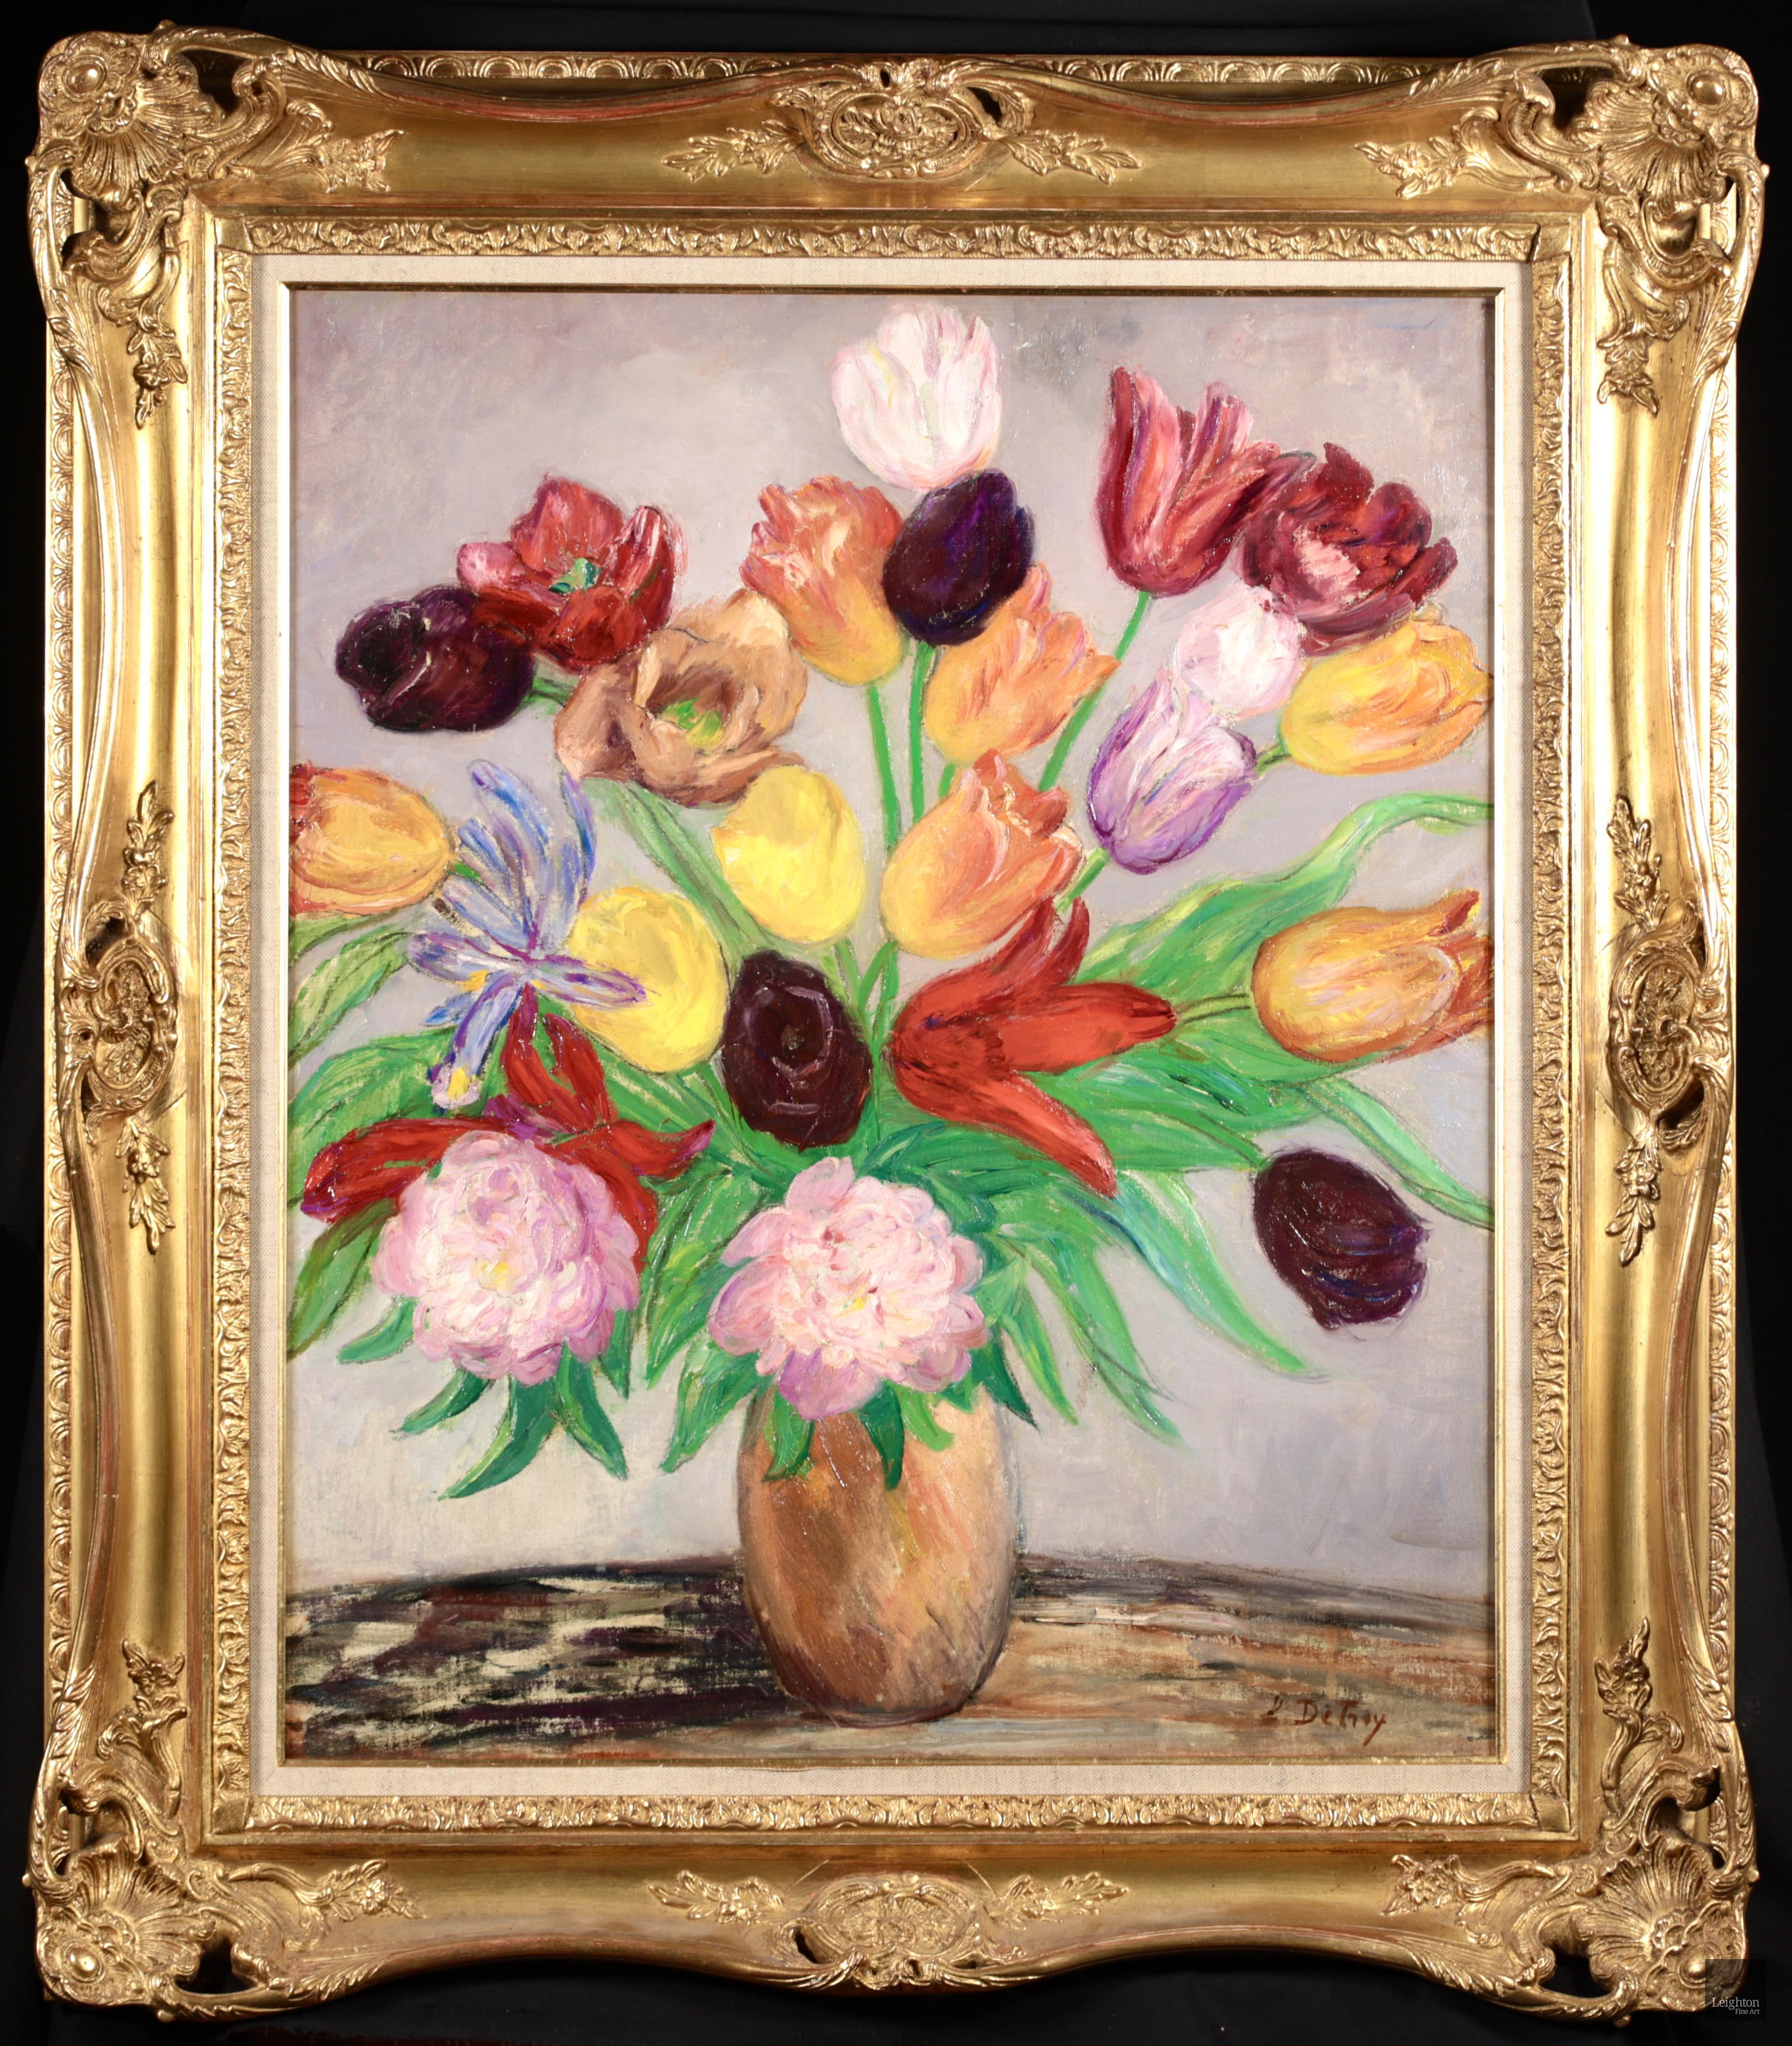 Nature morte signée, huile sur toile, circa 1930, du peintre impressionniste français Léon Detroy. L'œuvre représente un vase en bronze rempli de tulipes aux couleurs automnales et de pivoines. Une pièce magnifiquement colorée et peinte.

Signature